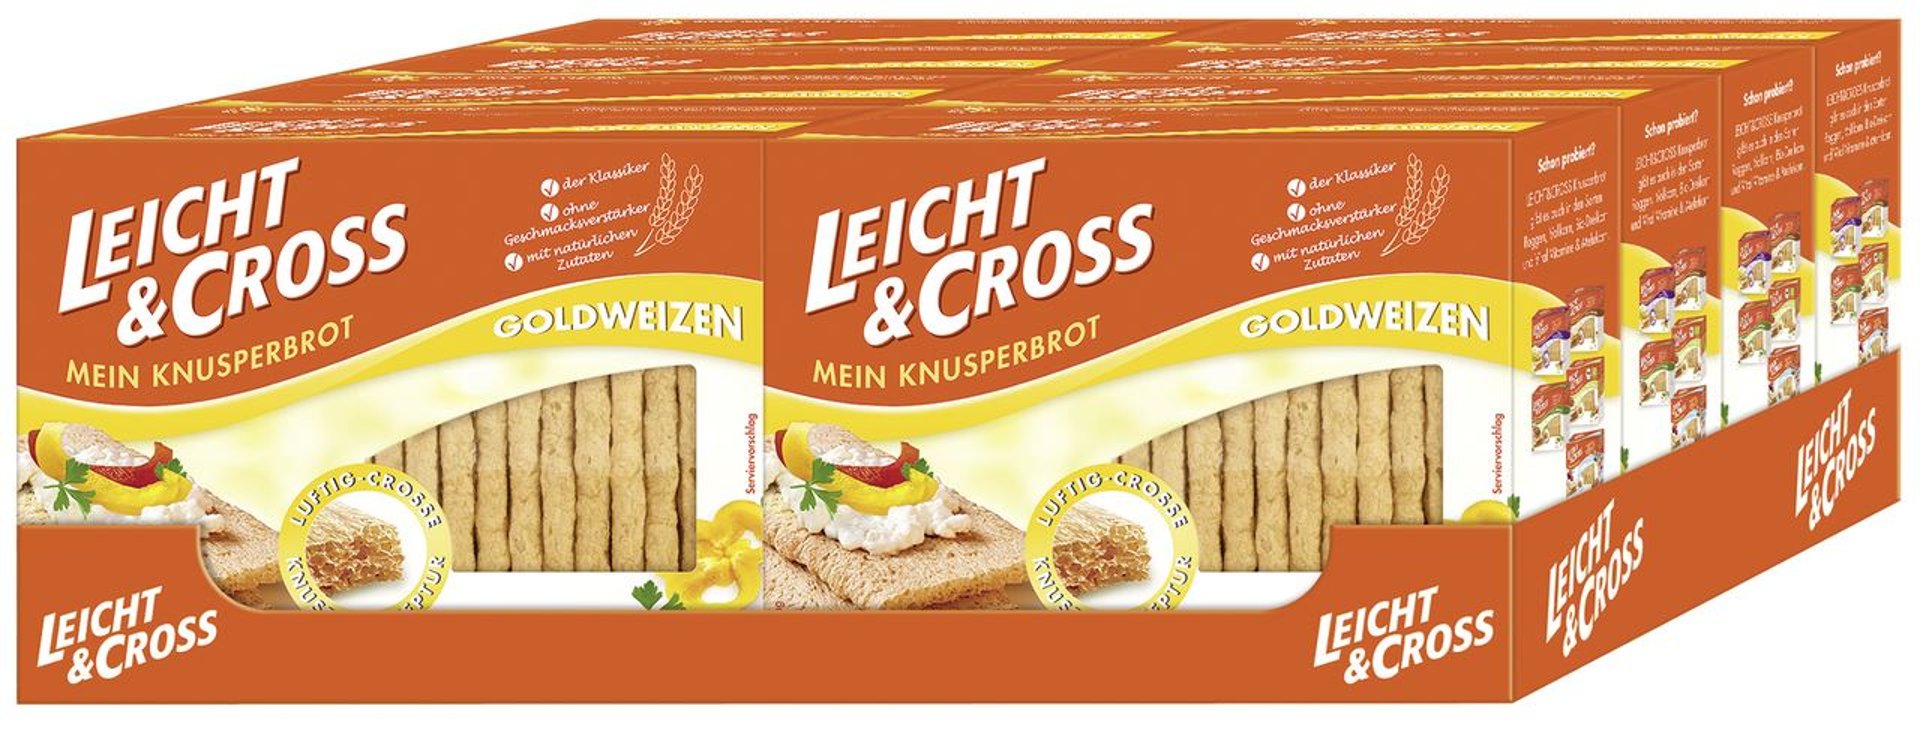 Leicht & Cross - Knusperbrot Weizen 8 x 125 g Schachteln